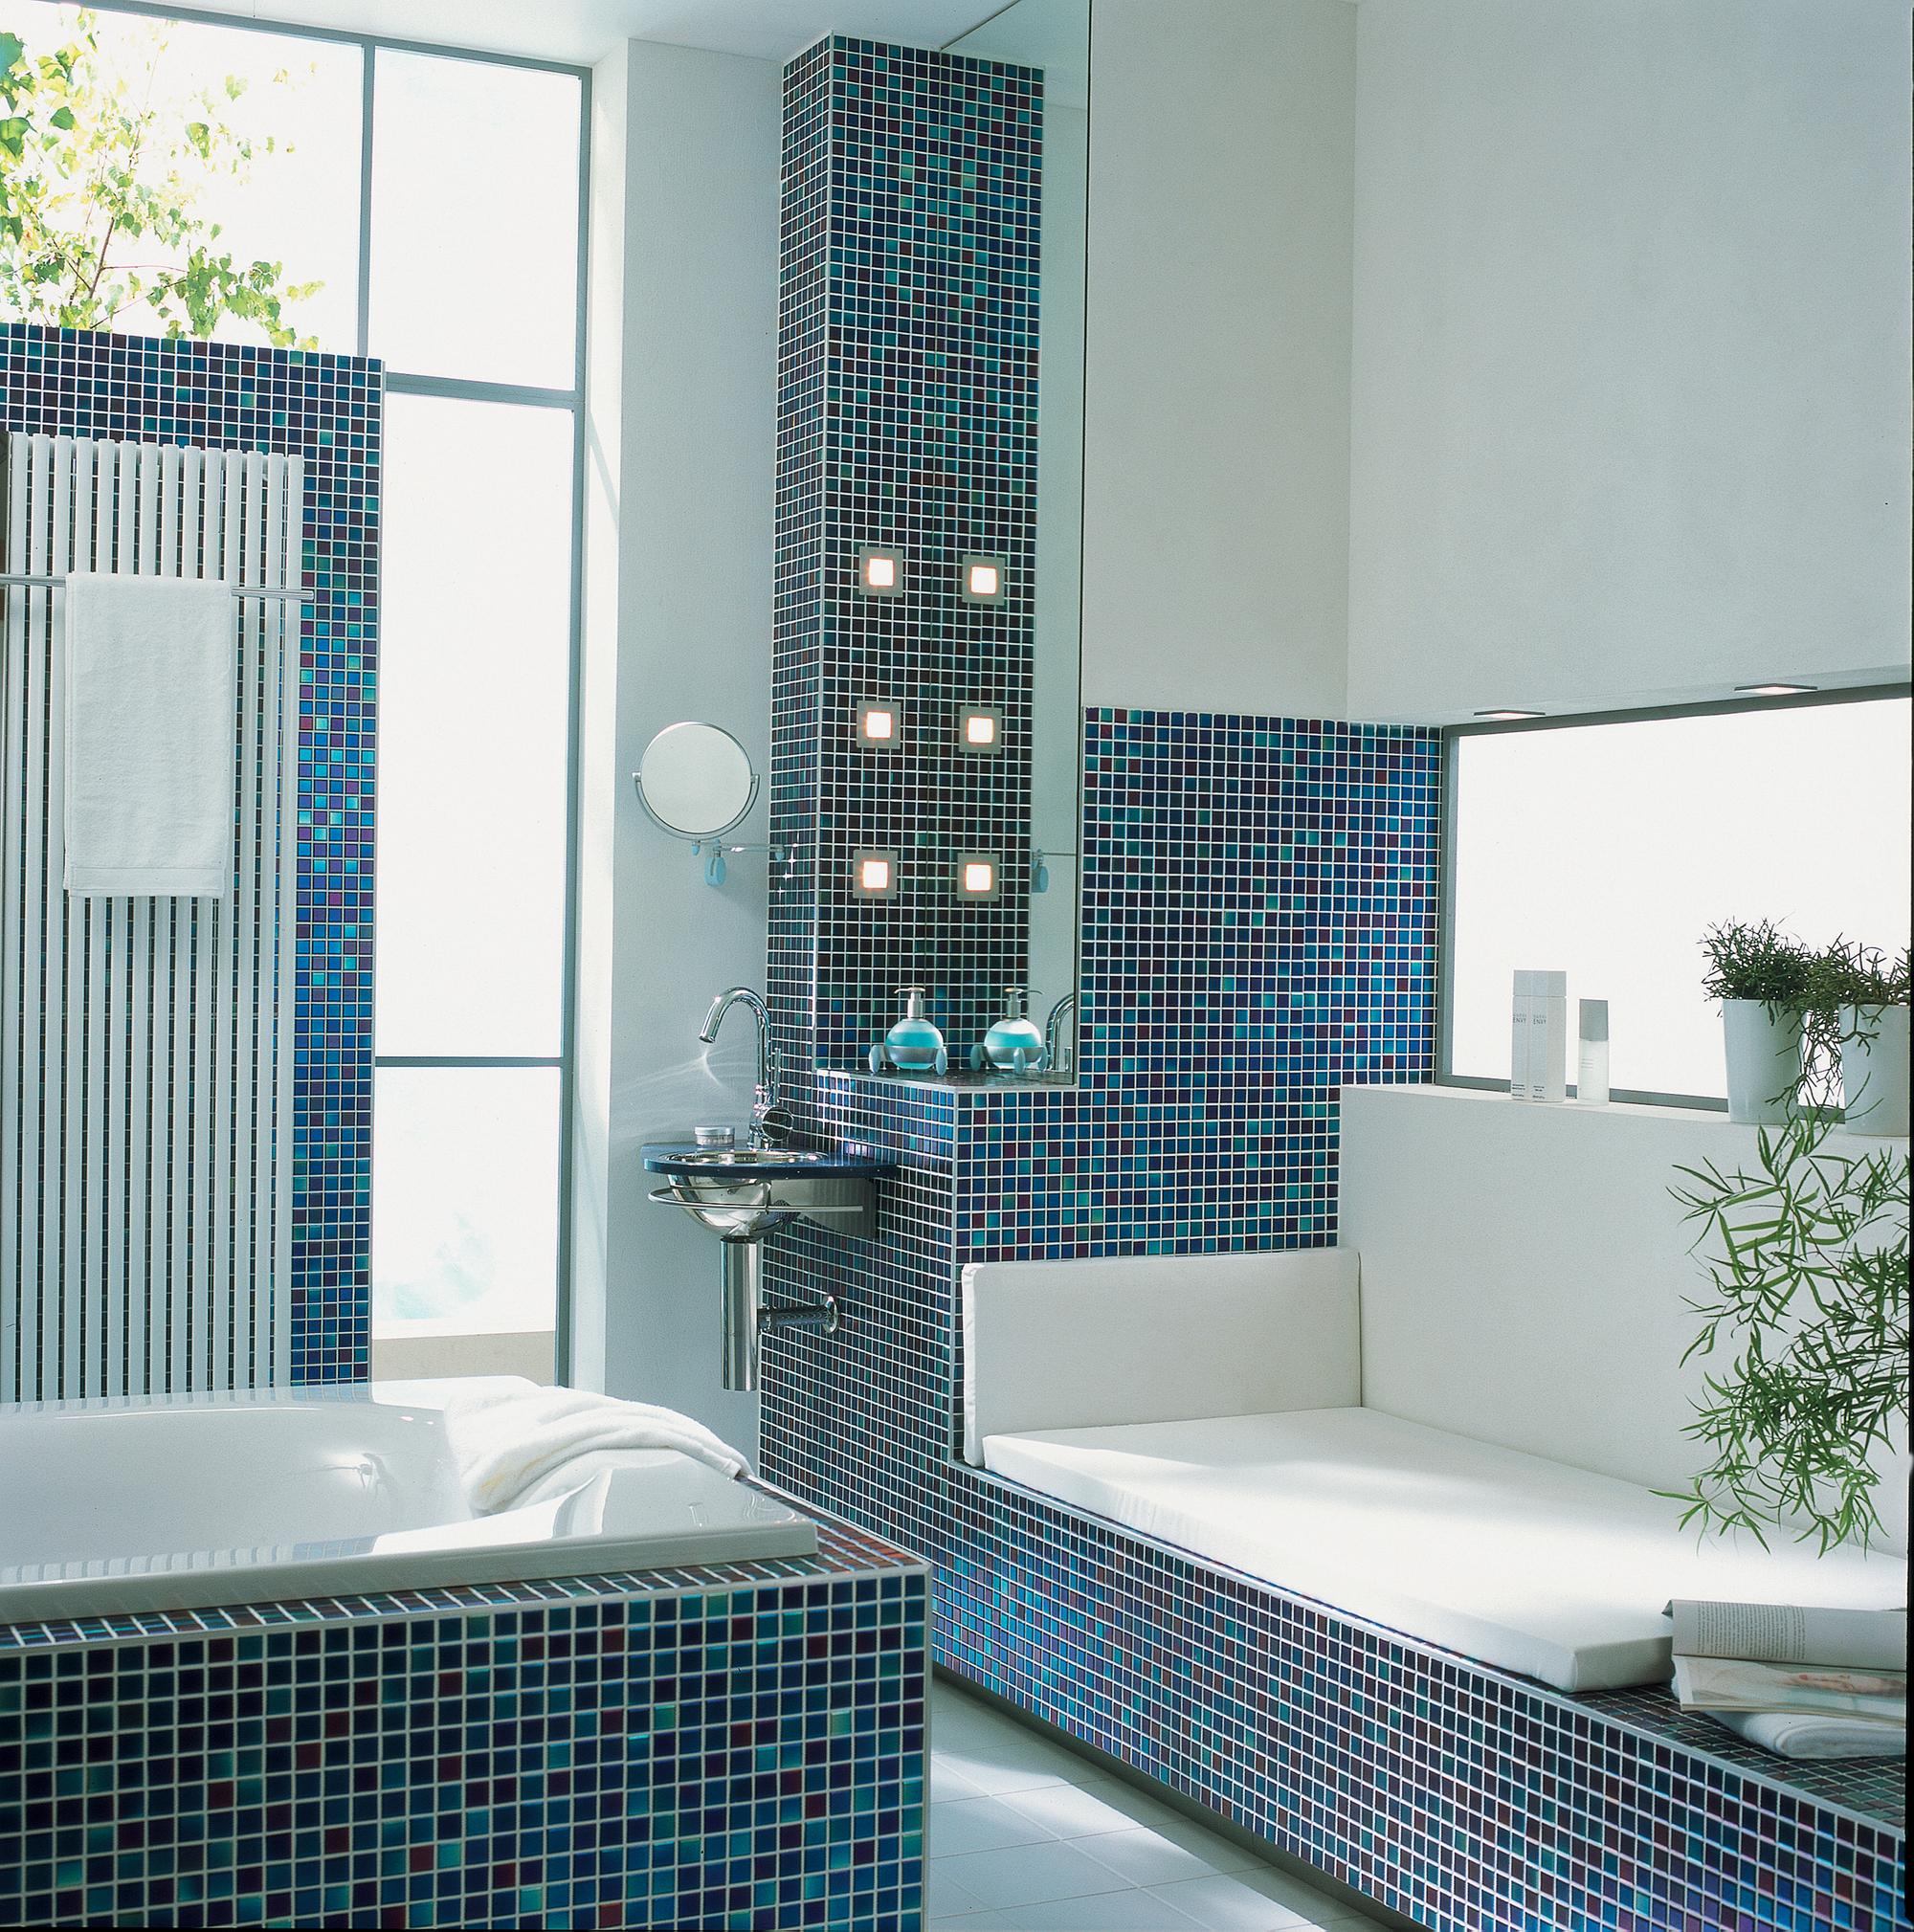 Sitzbank aus Mosaikfliesen für mehr Komfort im Bad #fliesen #mosaikfliesen #badewanne #sitzbank #badfliesen #eingelassenebadewanne #badezimmersitzbank ©Jasba Mosaik GmbH